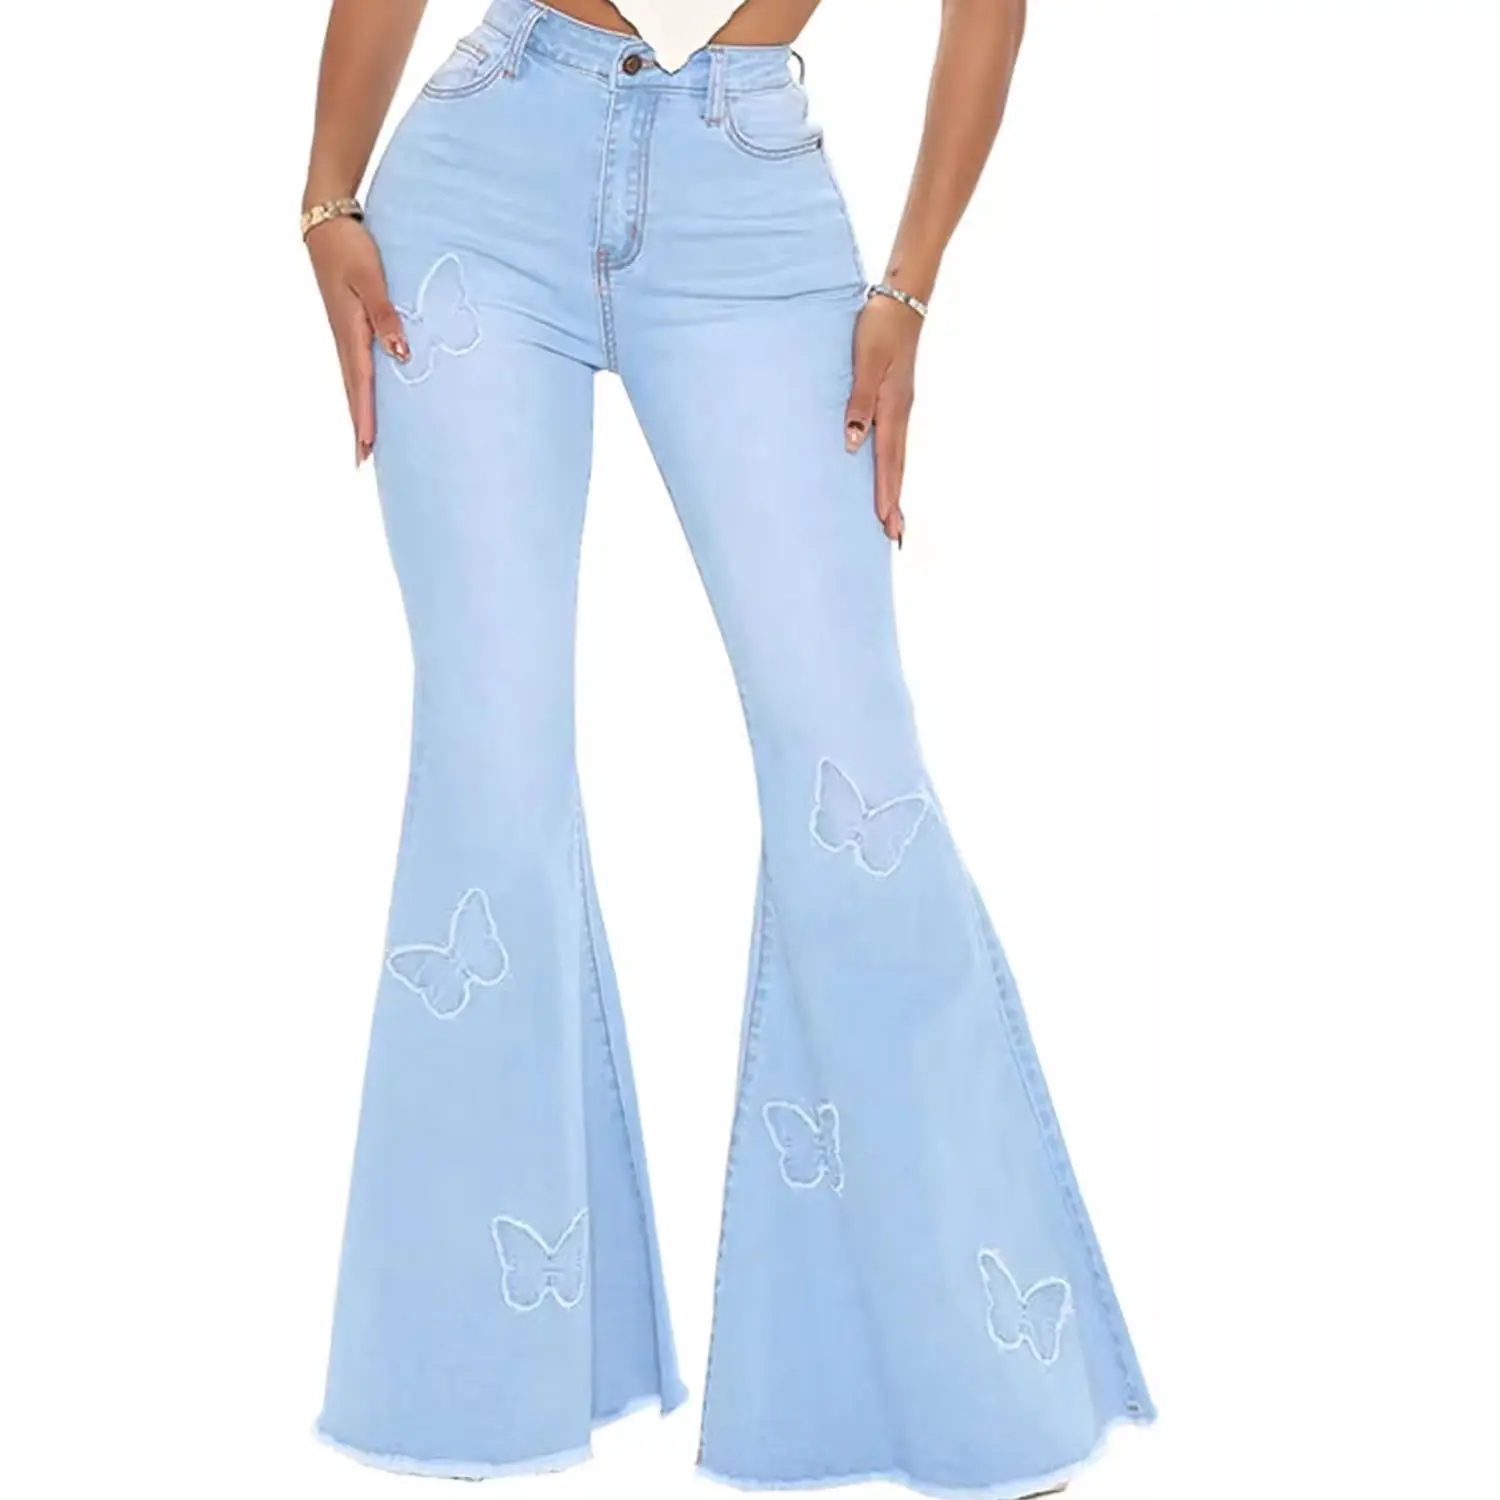 กางเกงยีนส์ทรงกระดิ่งปักลายผีเสื้อสำหรับผู้หญิงกางเกงยีนส์ผ้าดิบเอวสูงสีฟ้าอ่อน